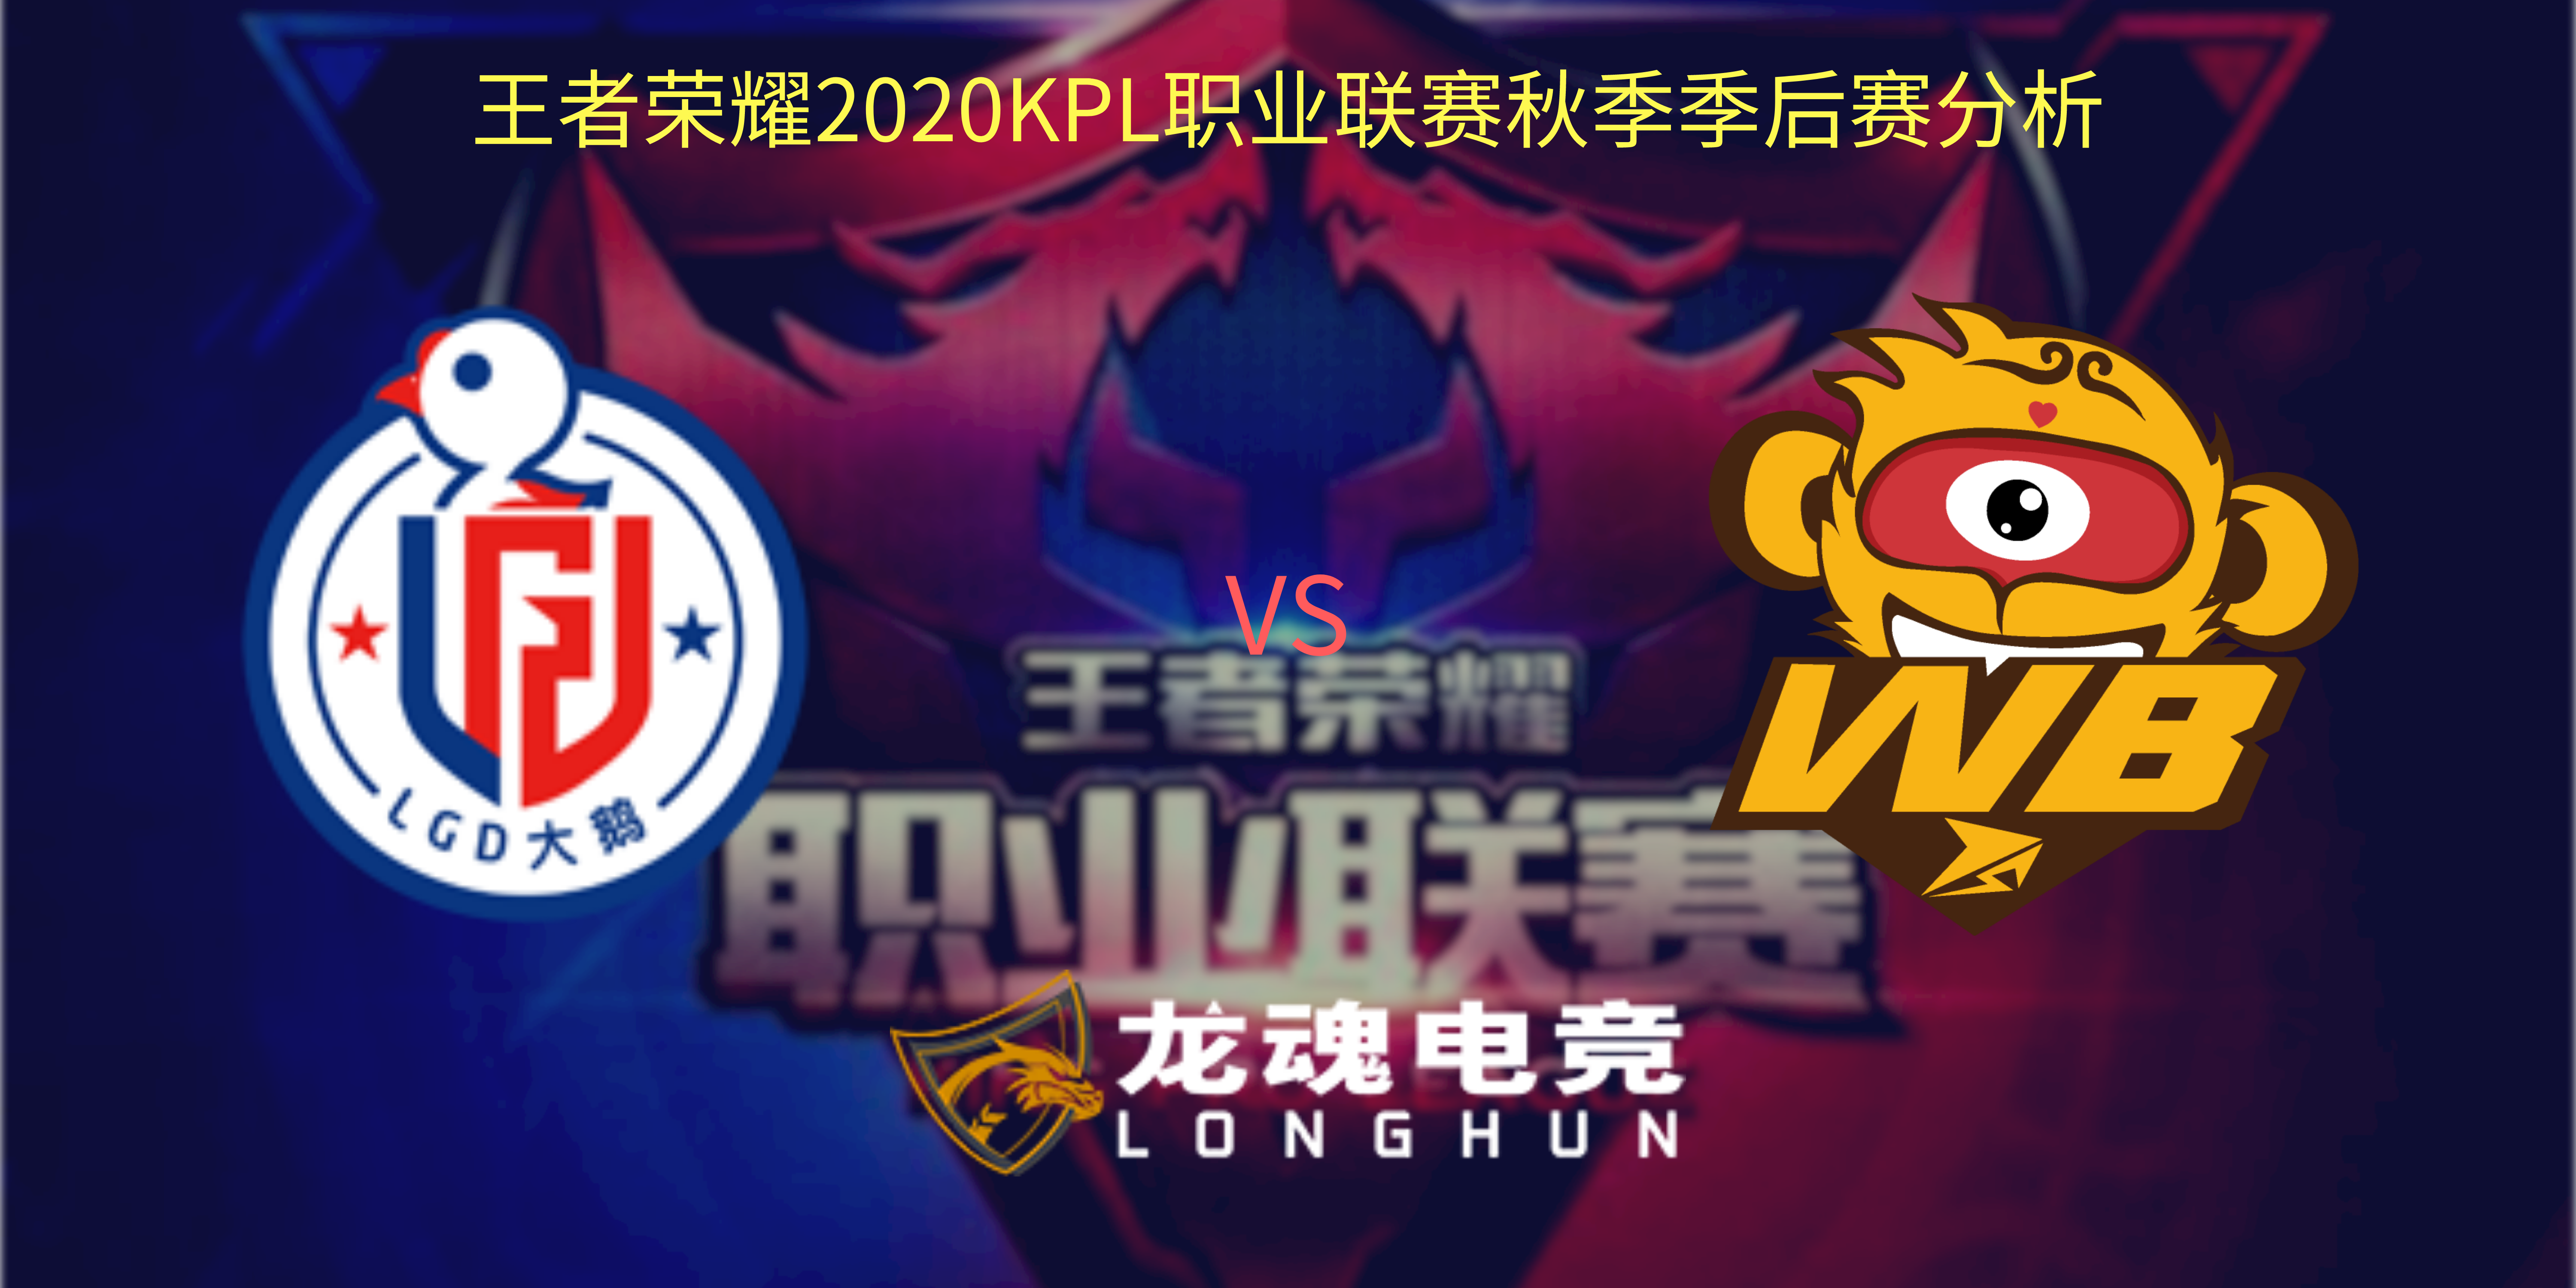  王者荣耀KPL季后赛赛事分析 杭州LGD大鹅 VS WB.TS | 龙魂电竞